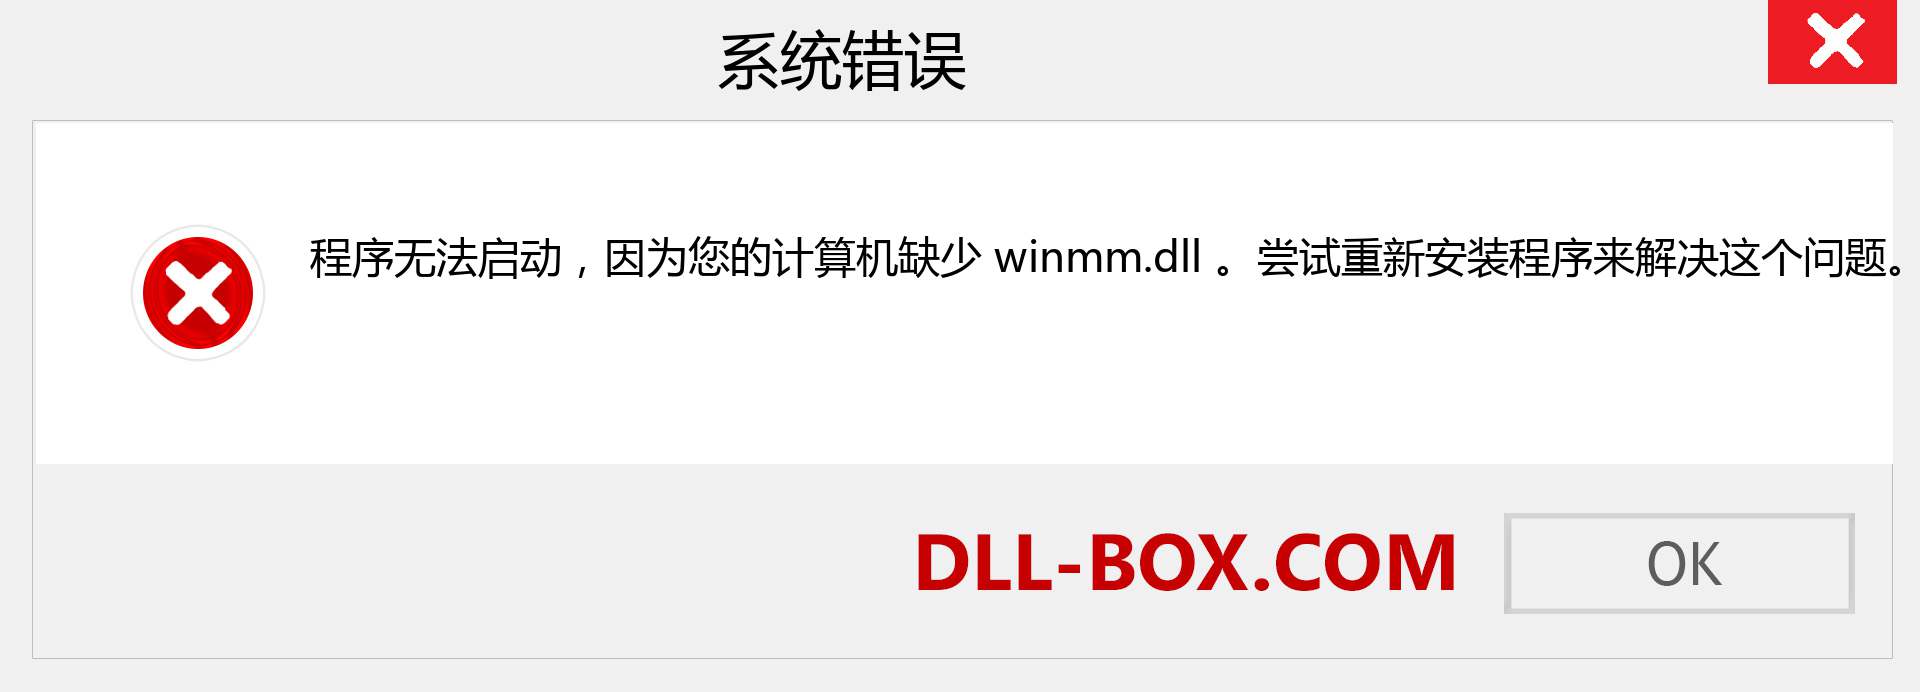 winmm.dll 文件丢失？。 适用于 Windows 7、8、10 的下载 - 修复 Windows、照片、图像上的 winmm dll 丢失错误